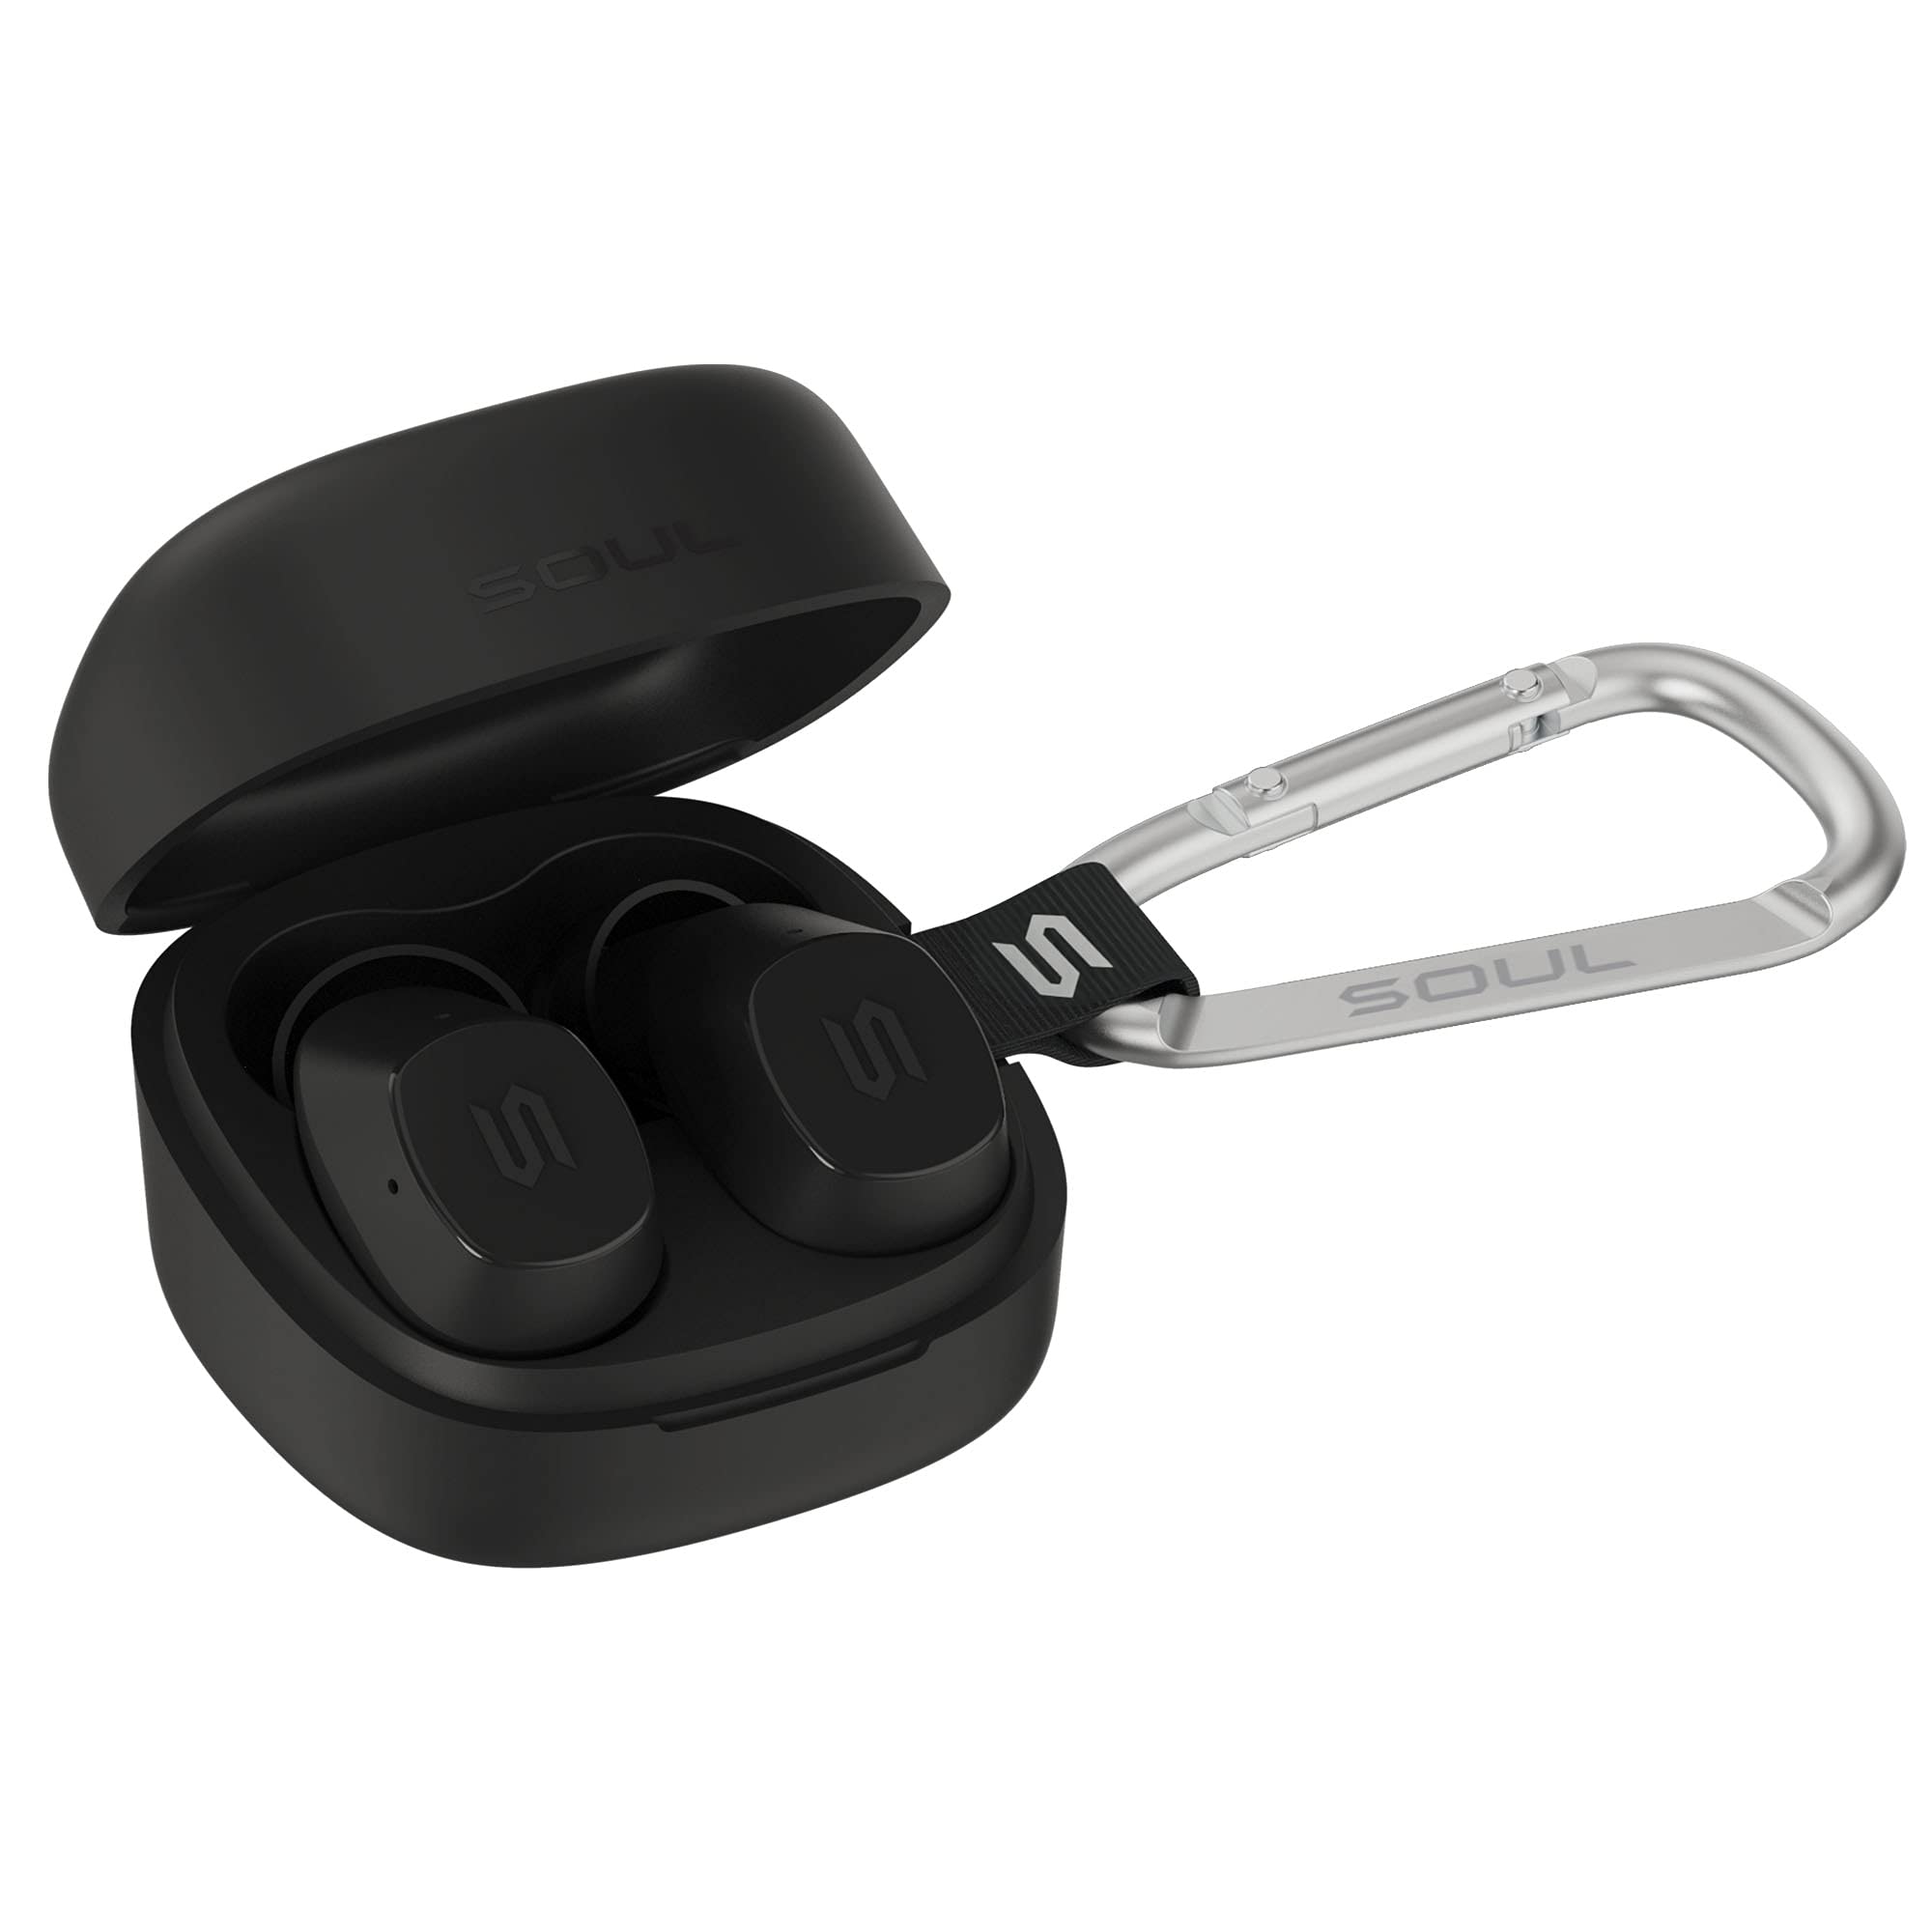 New SOUL S-Nano True Wireless Earbuds - in Ear Headphones, Ultra Portable, Bluetooth, IPX5 Waterproof, Transparency Mode - Black